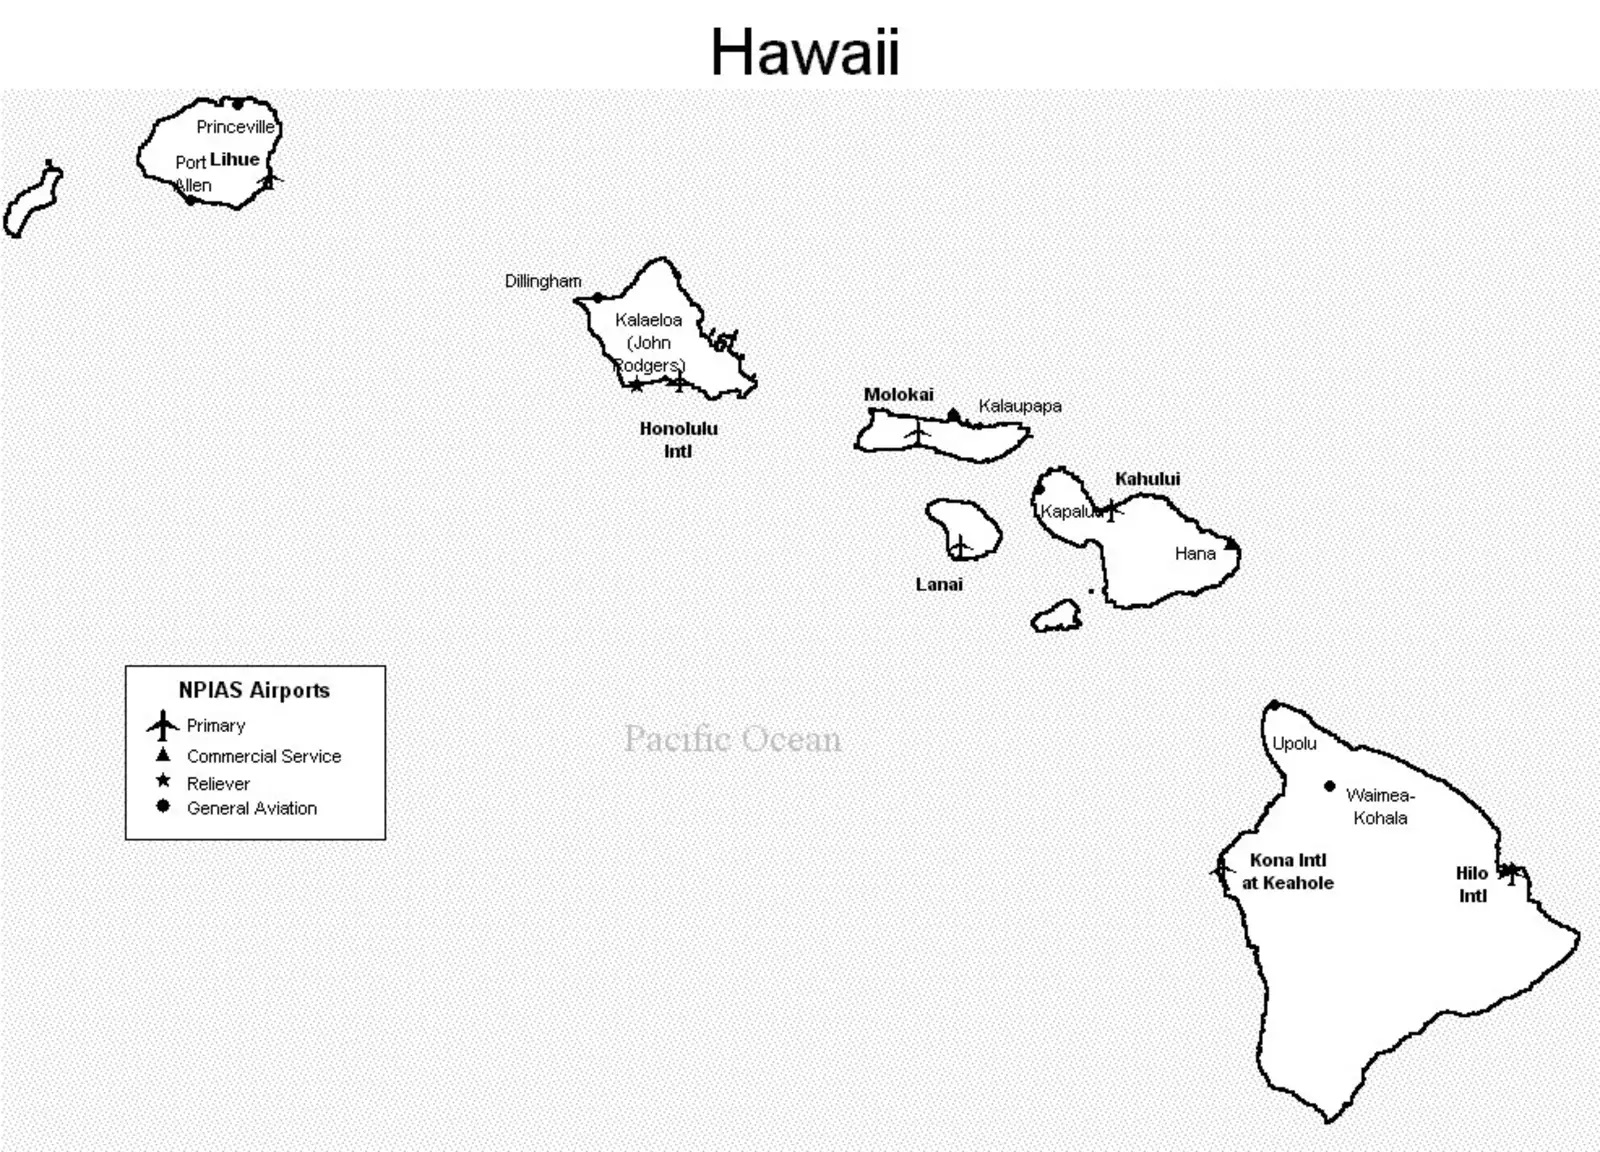 Hawaii-airports-map